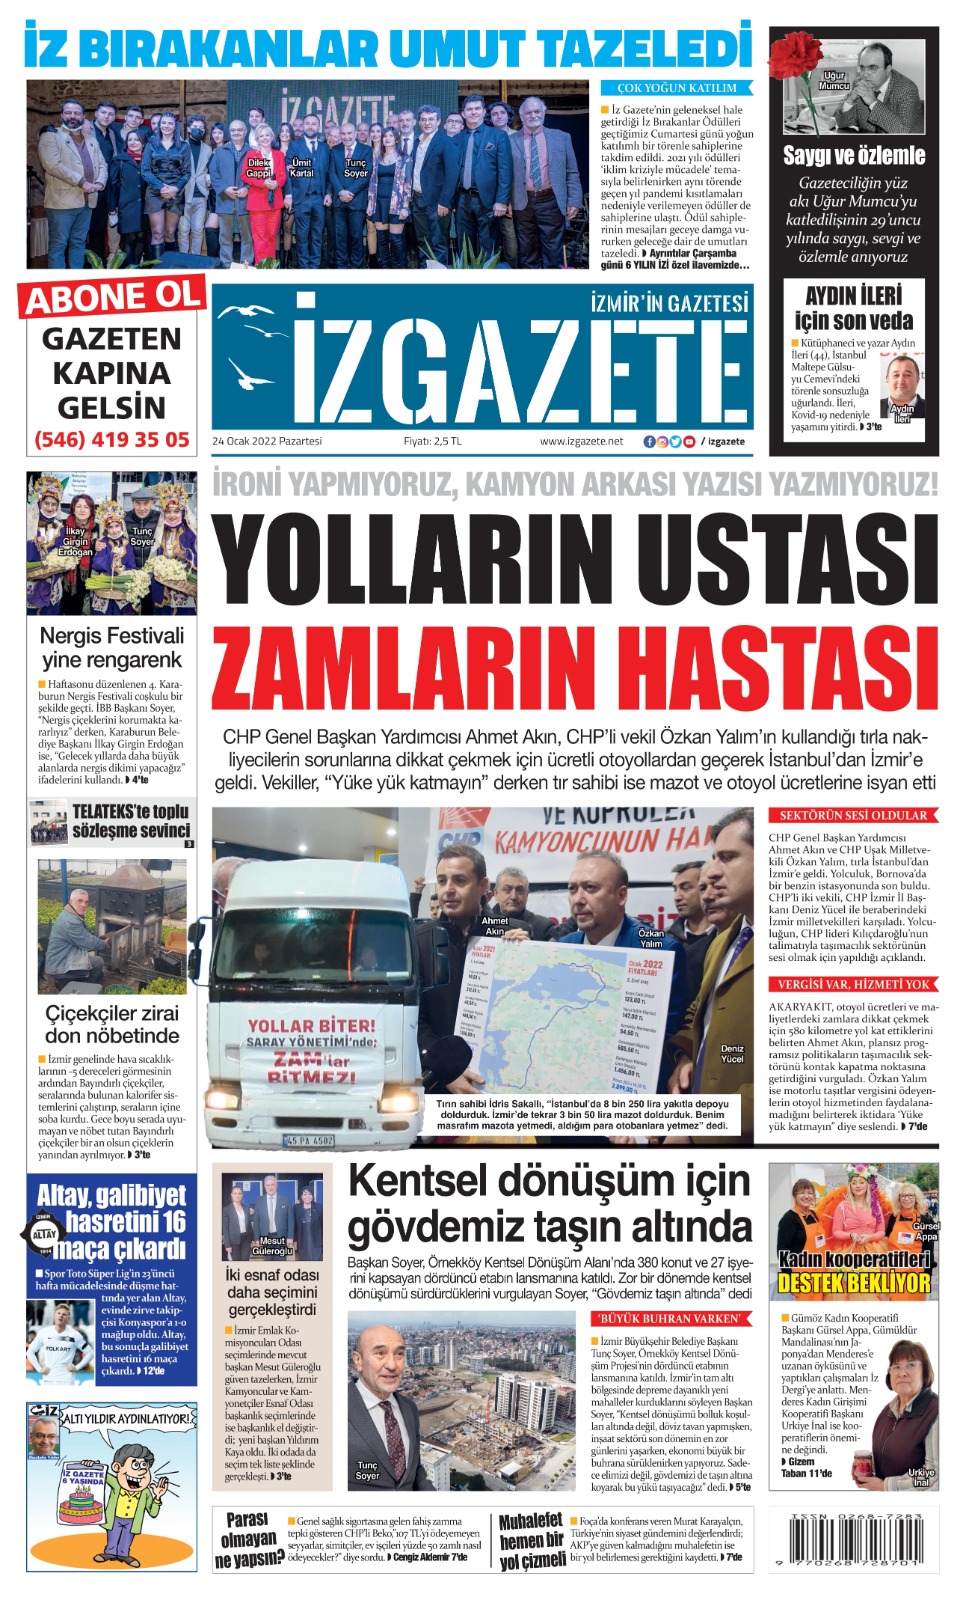 İz Gazete - İzmir'in Gazetesi - 24.01.2022 Manşeti